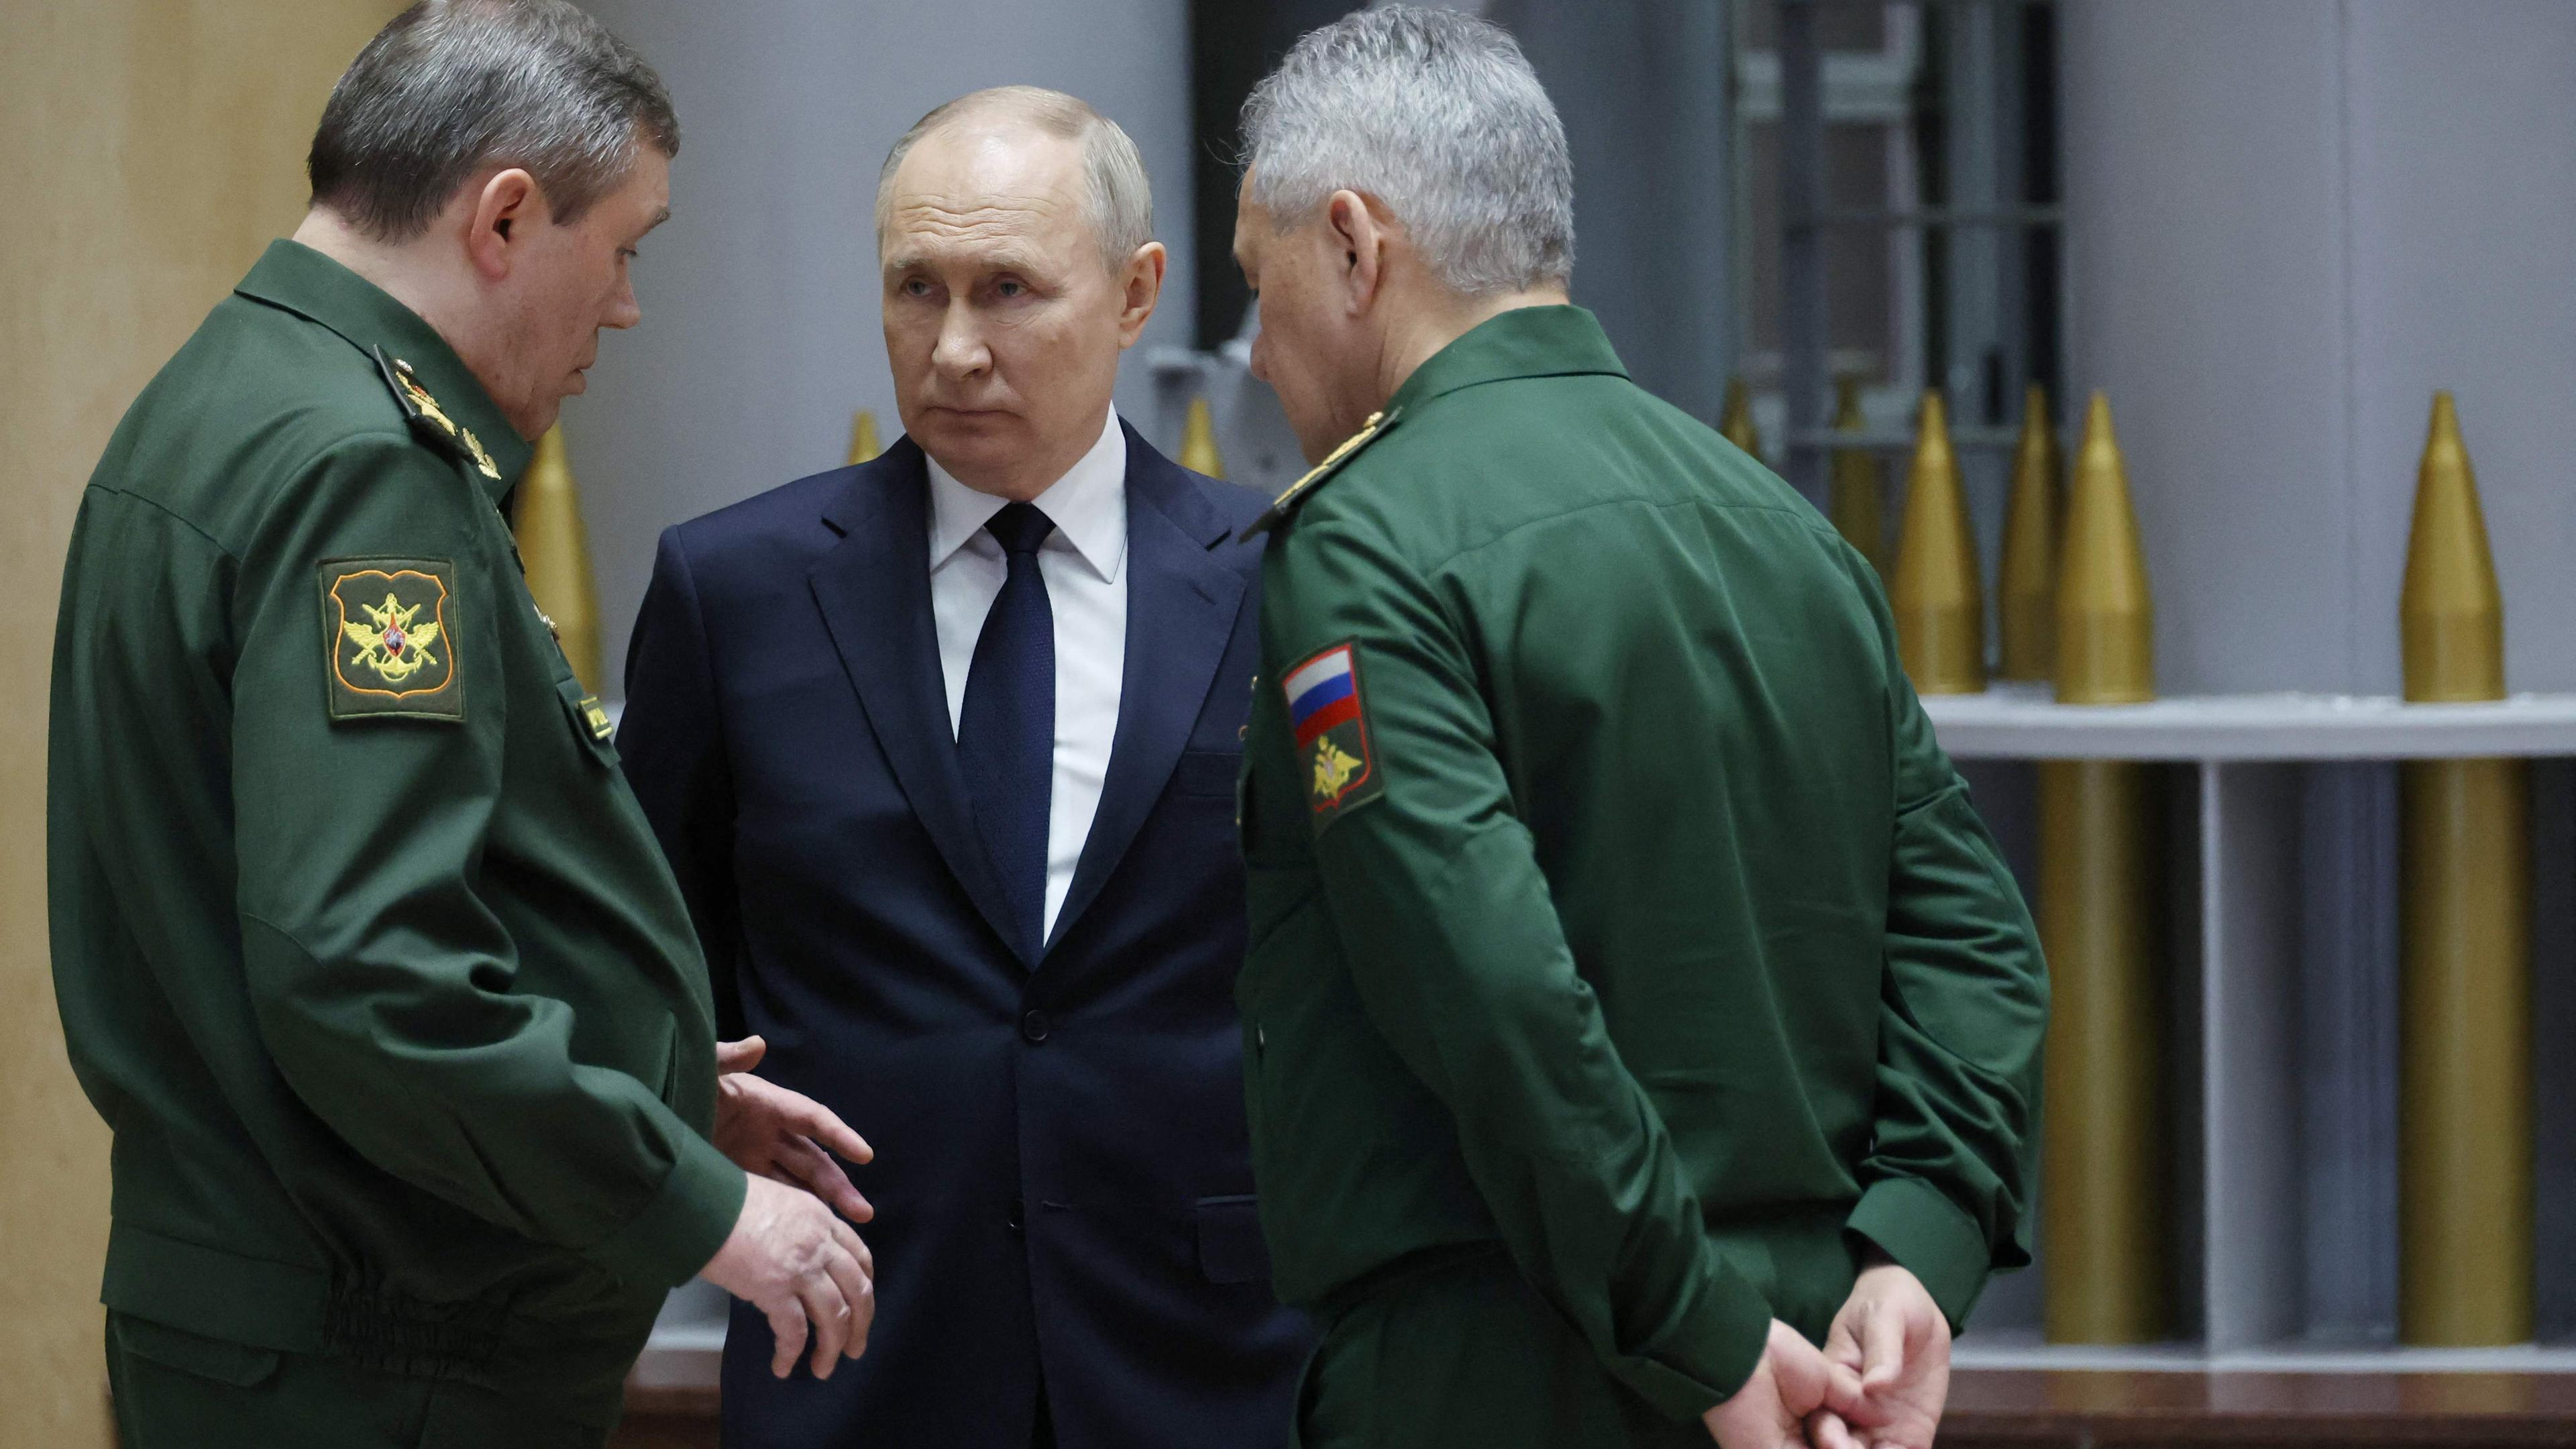 Das Bild zeigt den russischen Präsidenten Wladimir Putin (M.) im Gespräch, unter anderem mit Verteidigungsminister Sergej Schoigu.